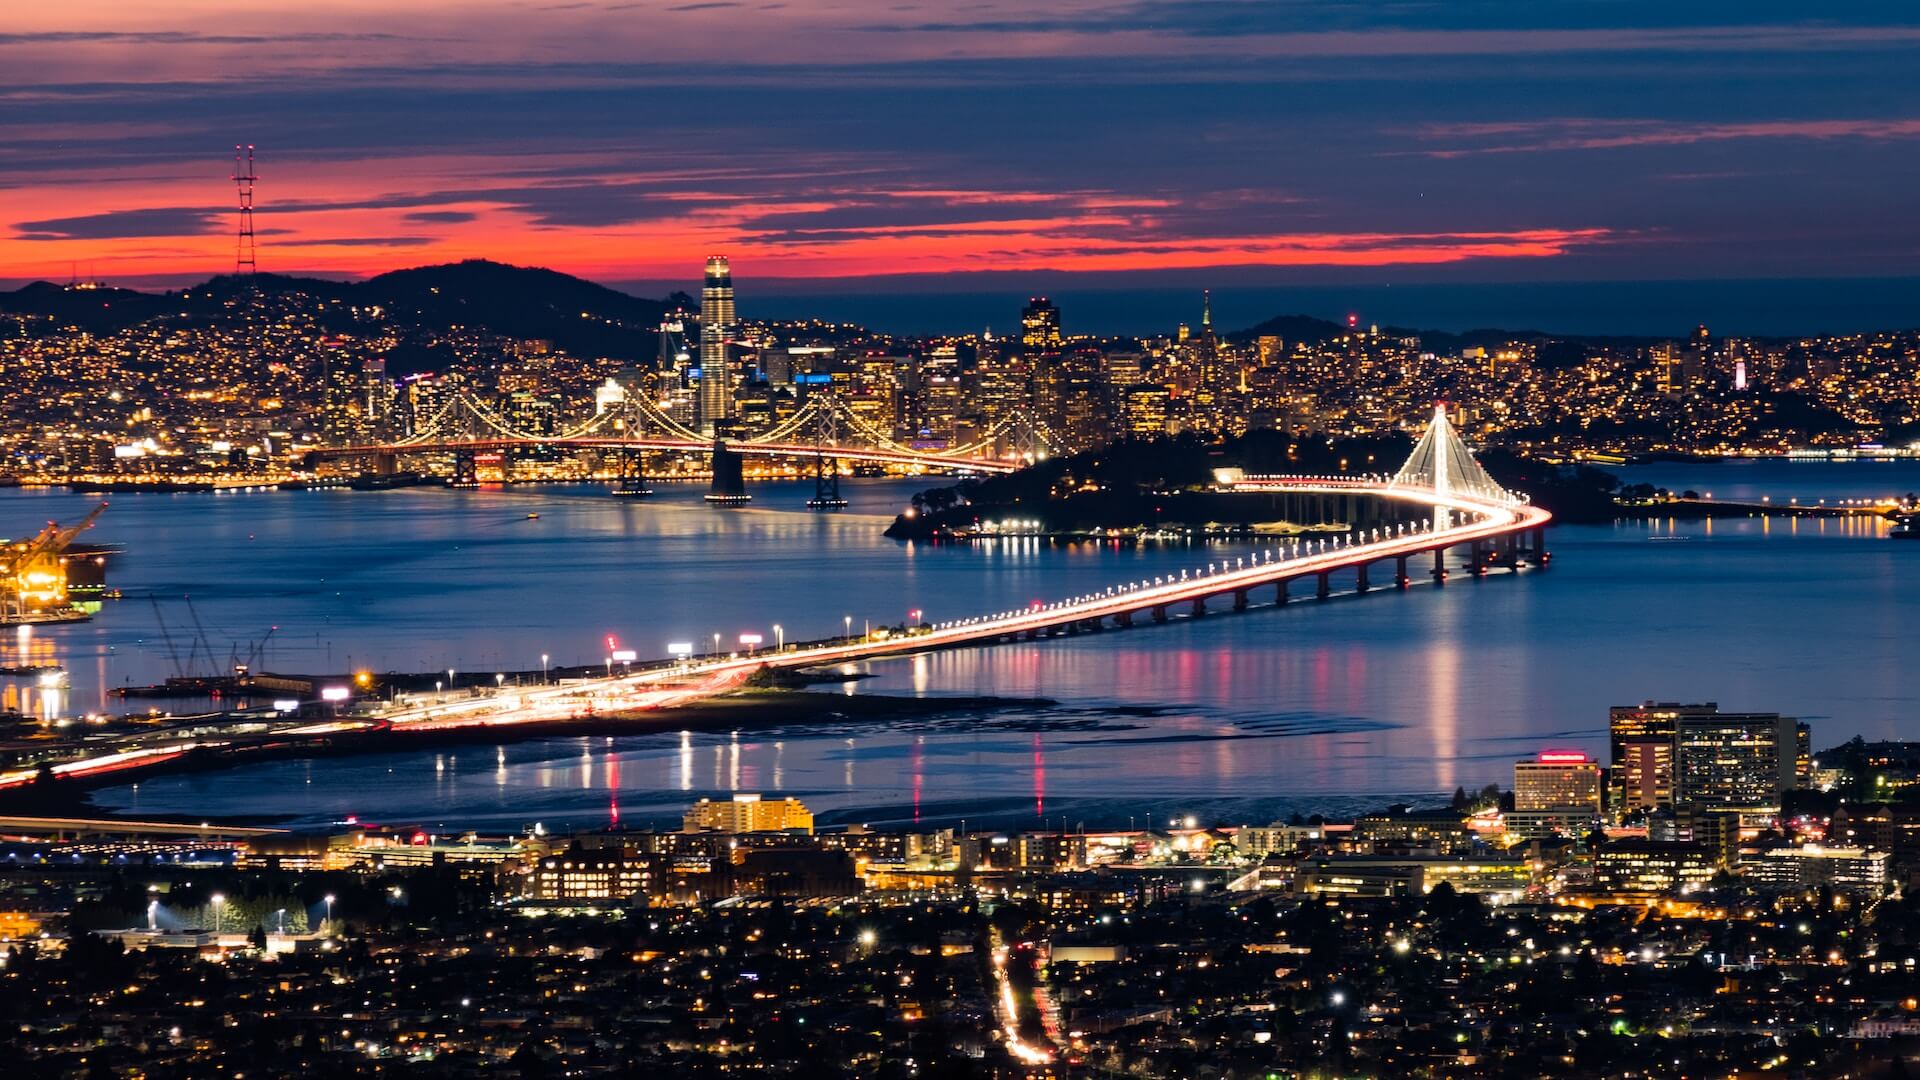 San Francisco skyline and bay at night